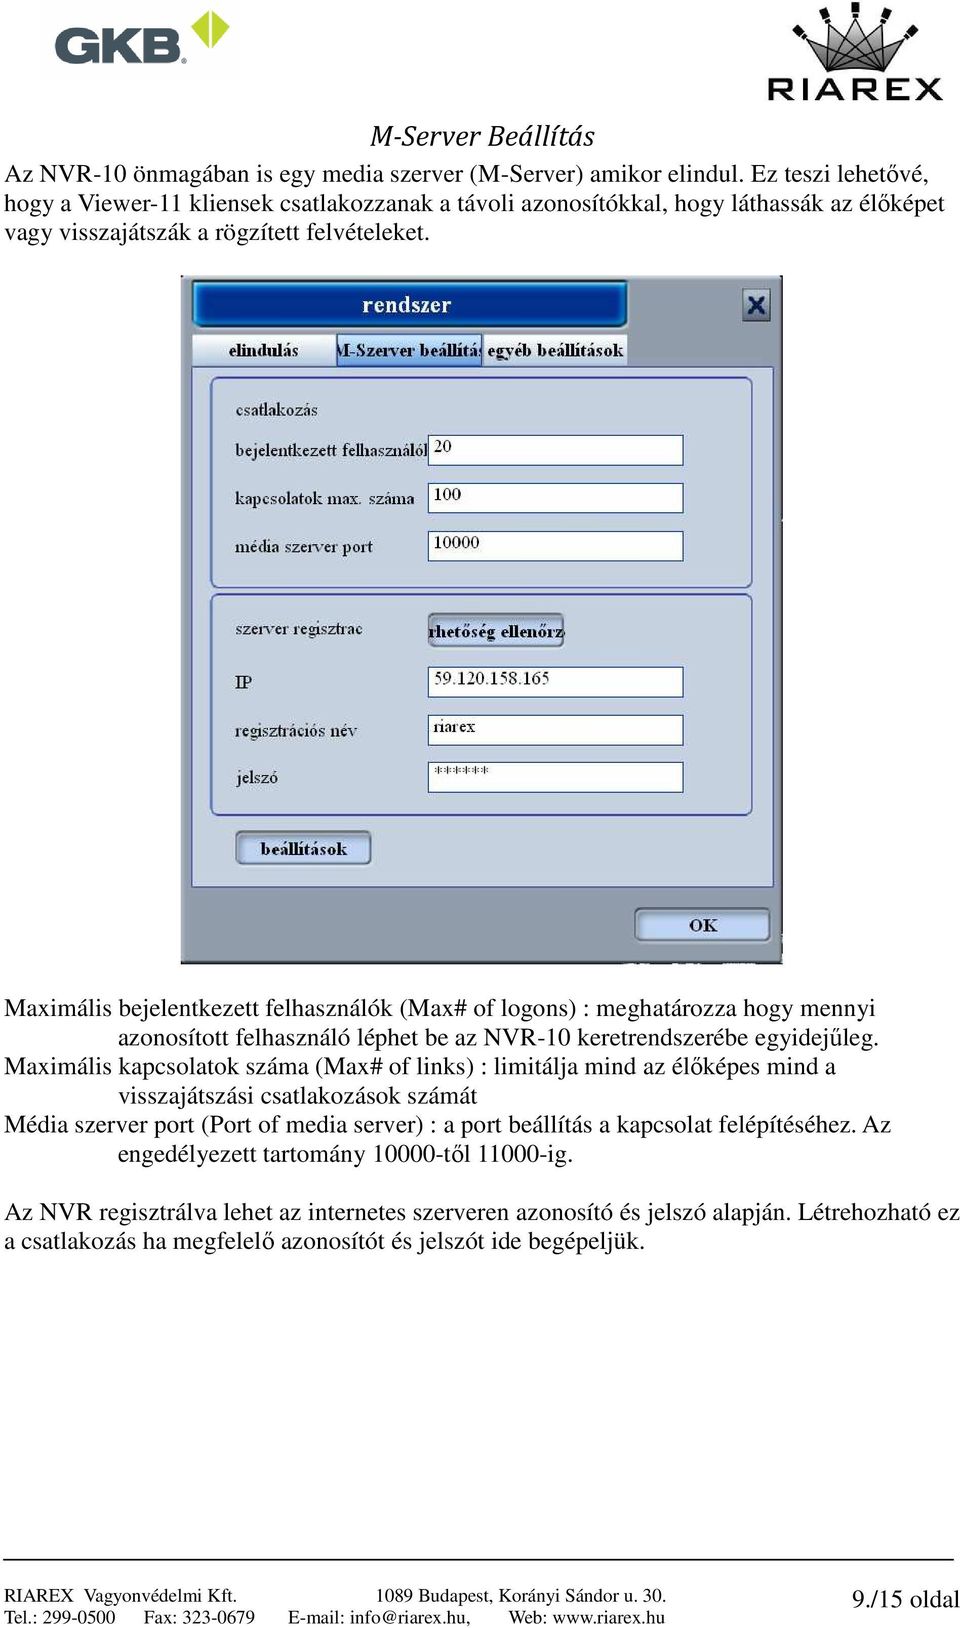 Maximális bejelentkezett felhasználók (Max# of logons) : meghatározza hogy mennyi azonosított felhasználó léphet be az NVR-10 keretrendszerébe egyidejűleg.